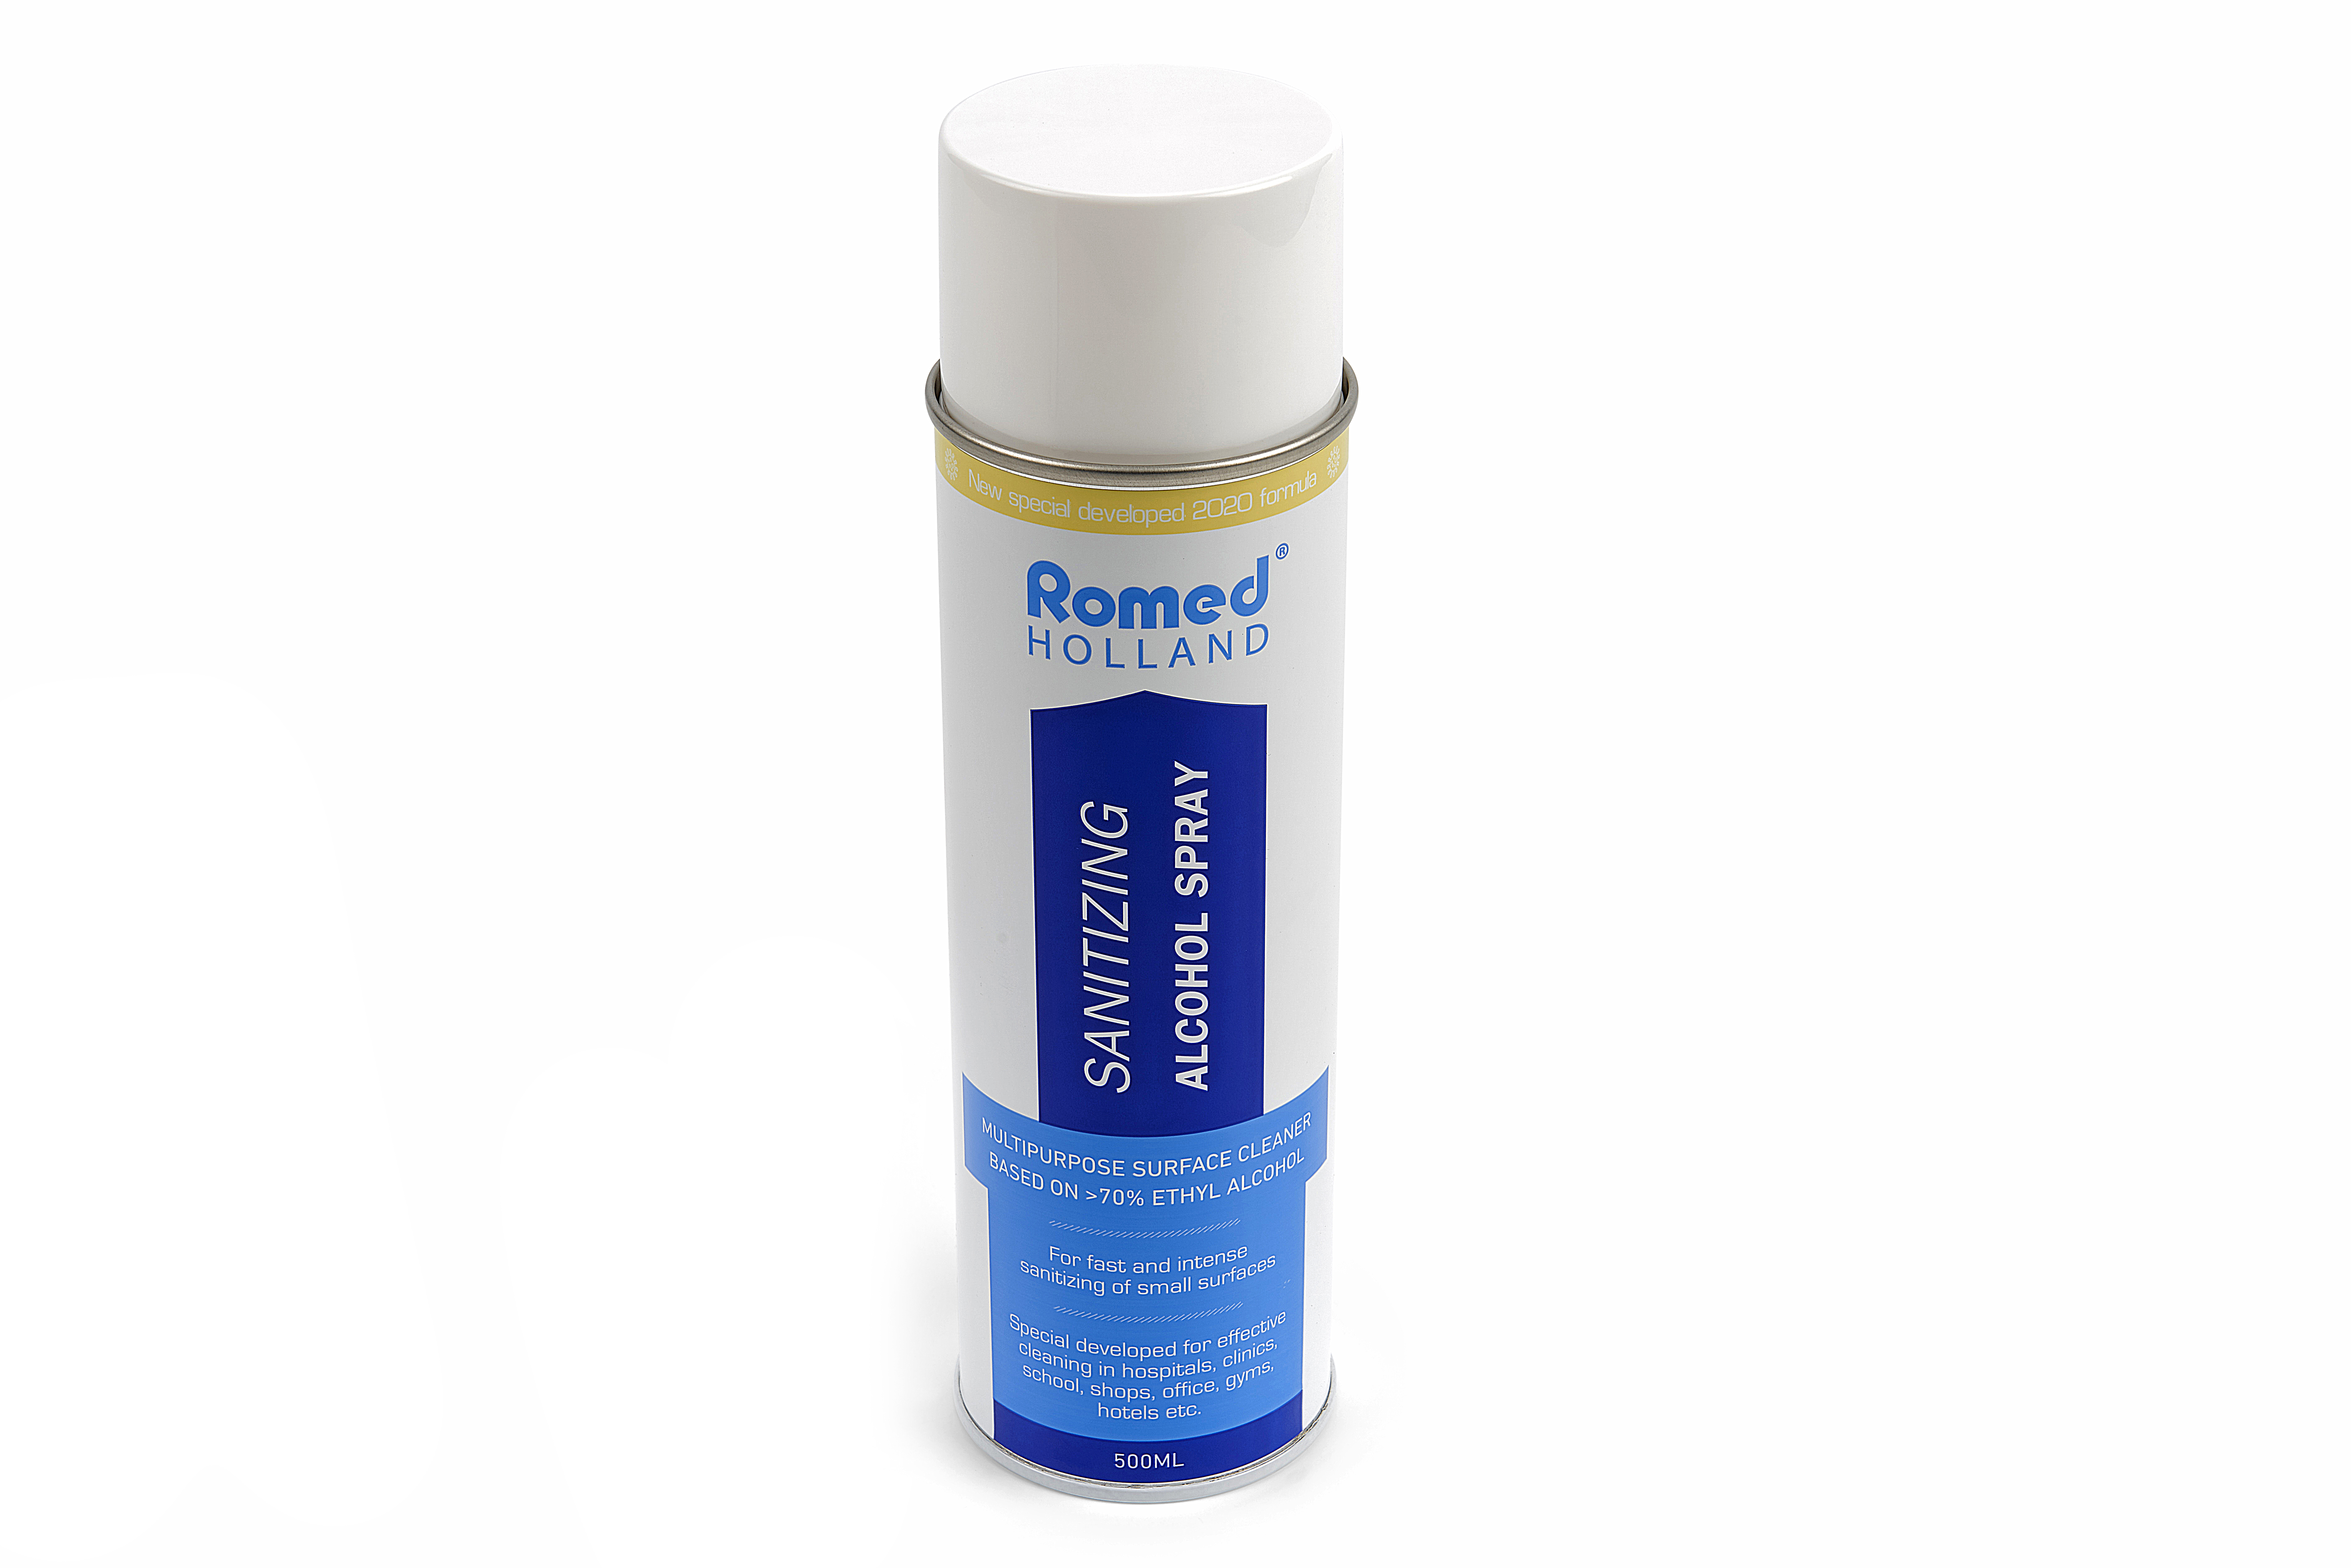 COV19-SPRAY Spray igienizzante Romed, per un'igienizzazione rapida e intensa di piccole superfici. 12 aerosol, 500 ml, in un collo.